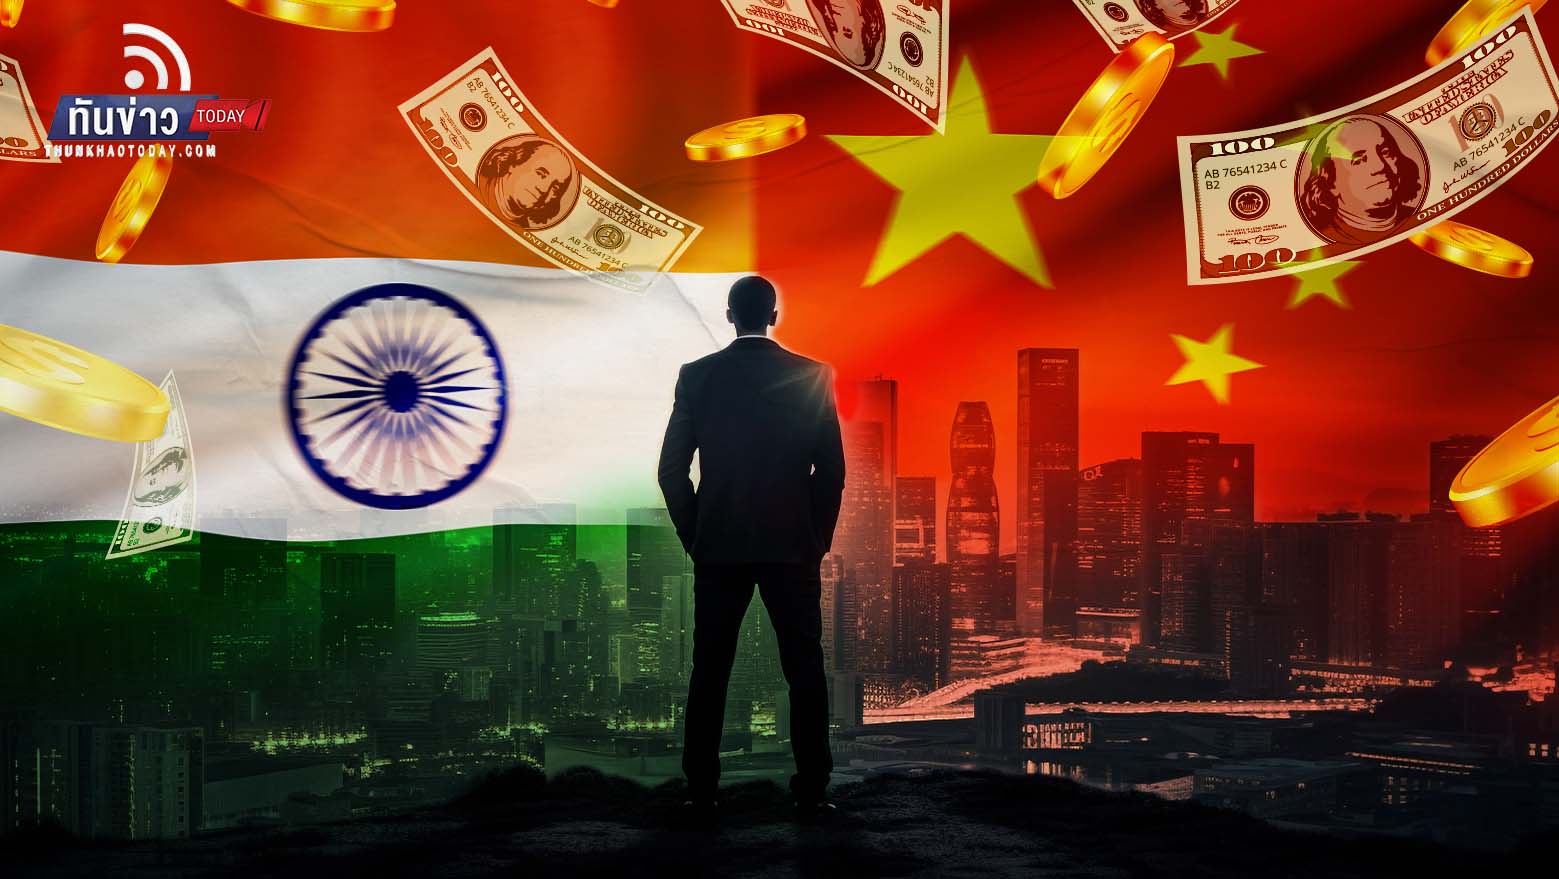 “เปิด 10 มหาเศรษฐีเอเชีย อินเดีย - จีน รวยสุด !